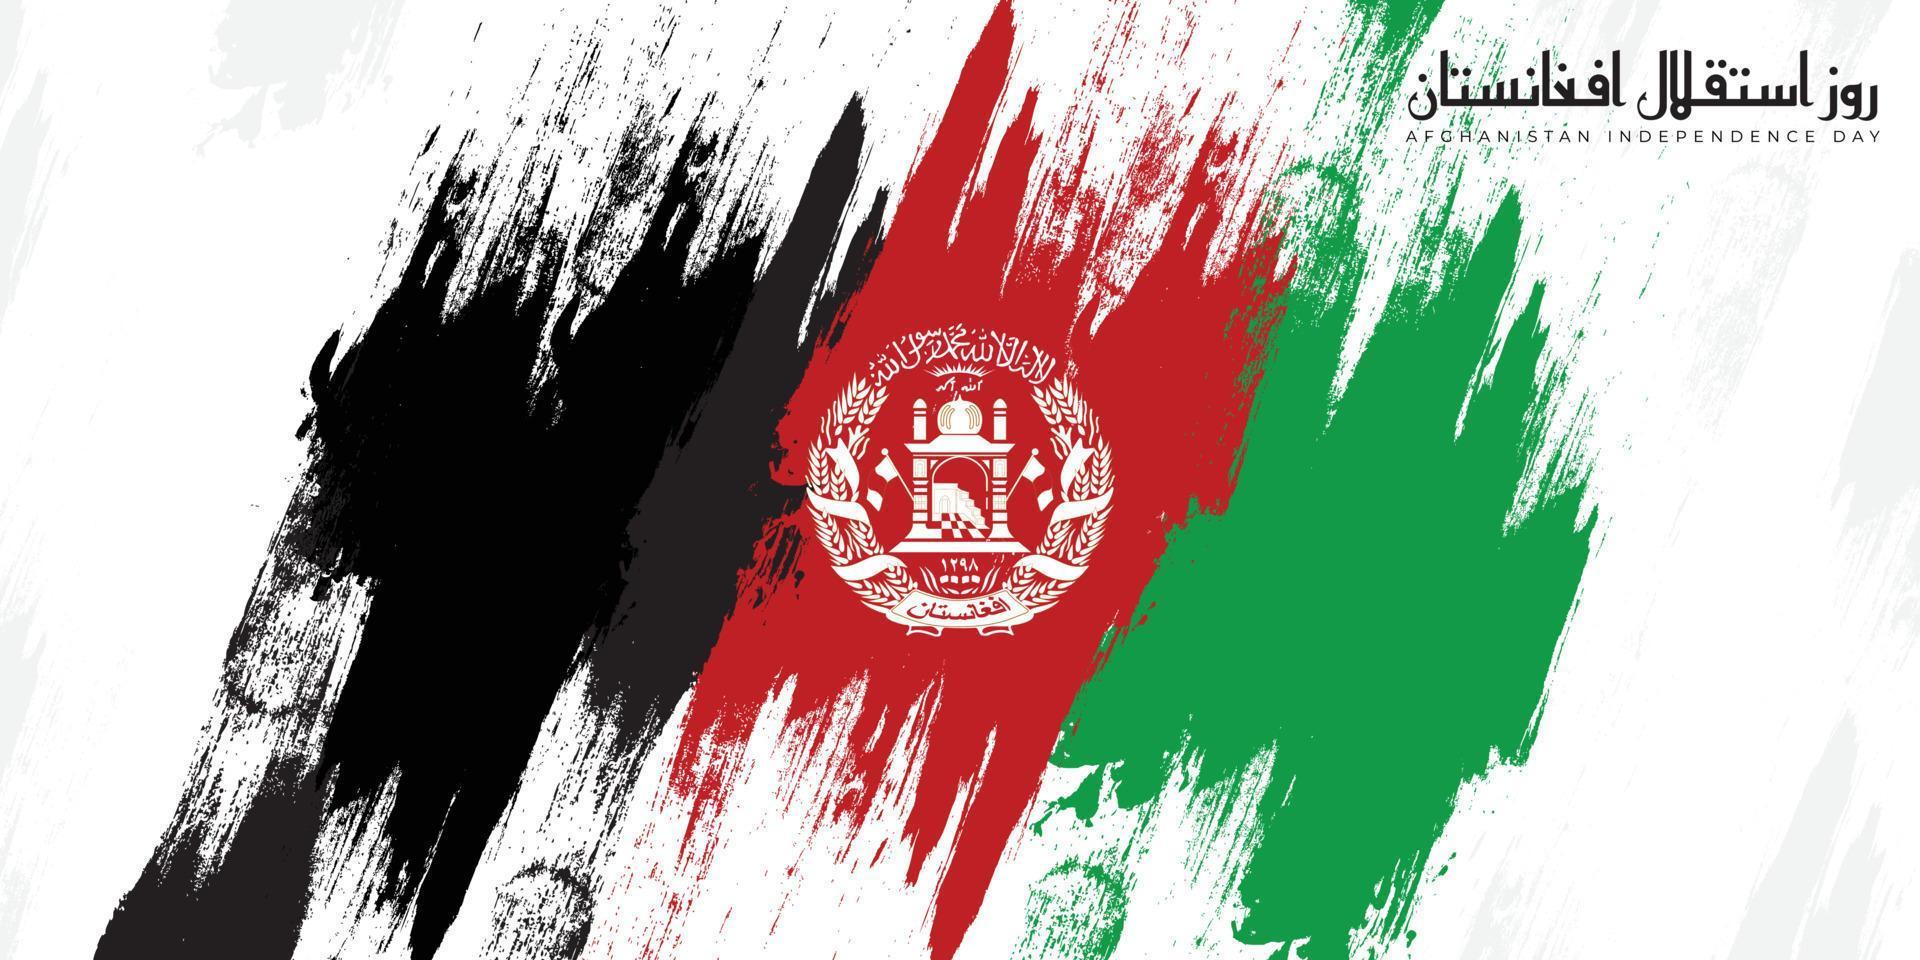 jour de l'indépendance afghanistan vecteur